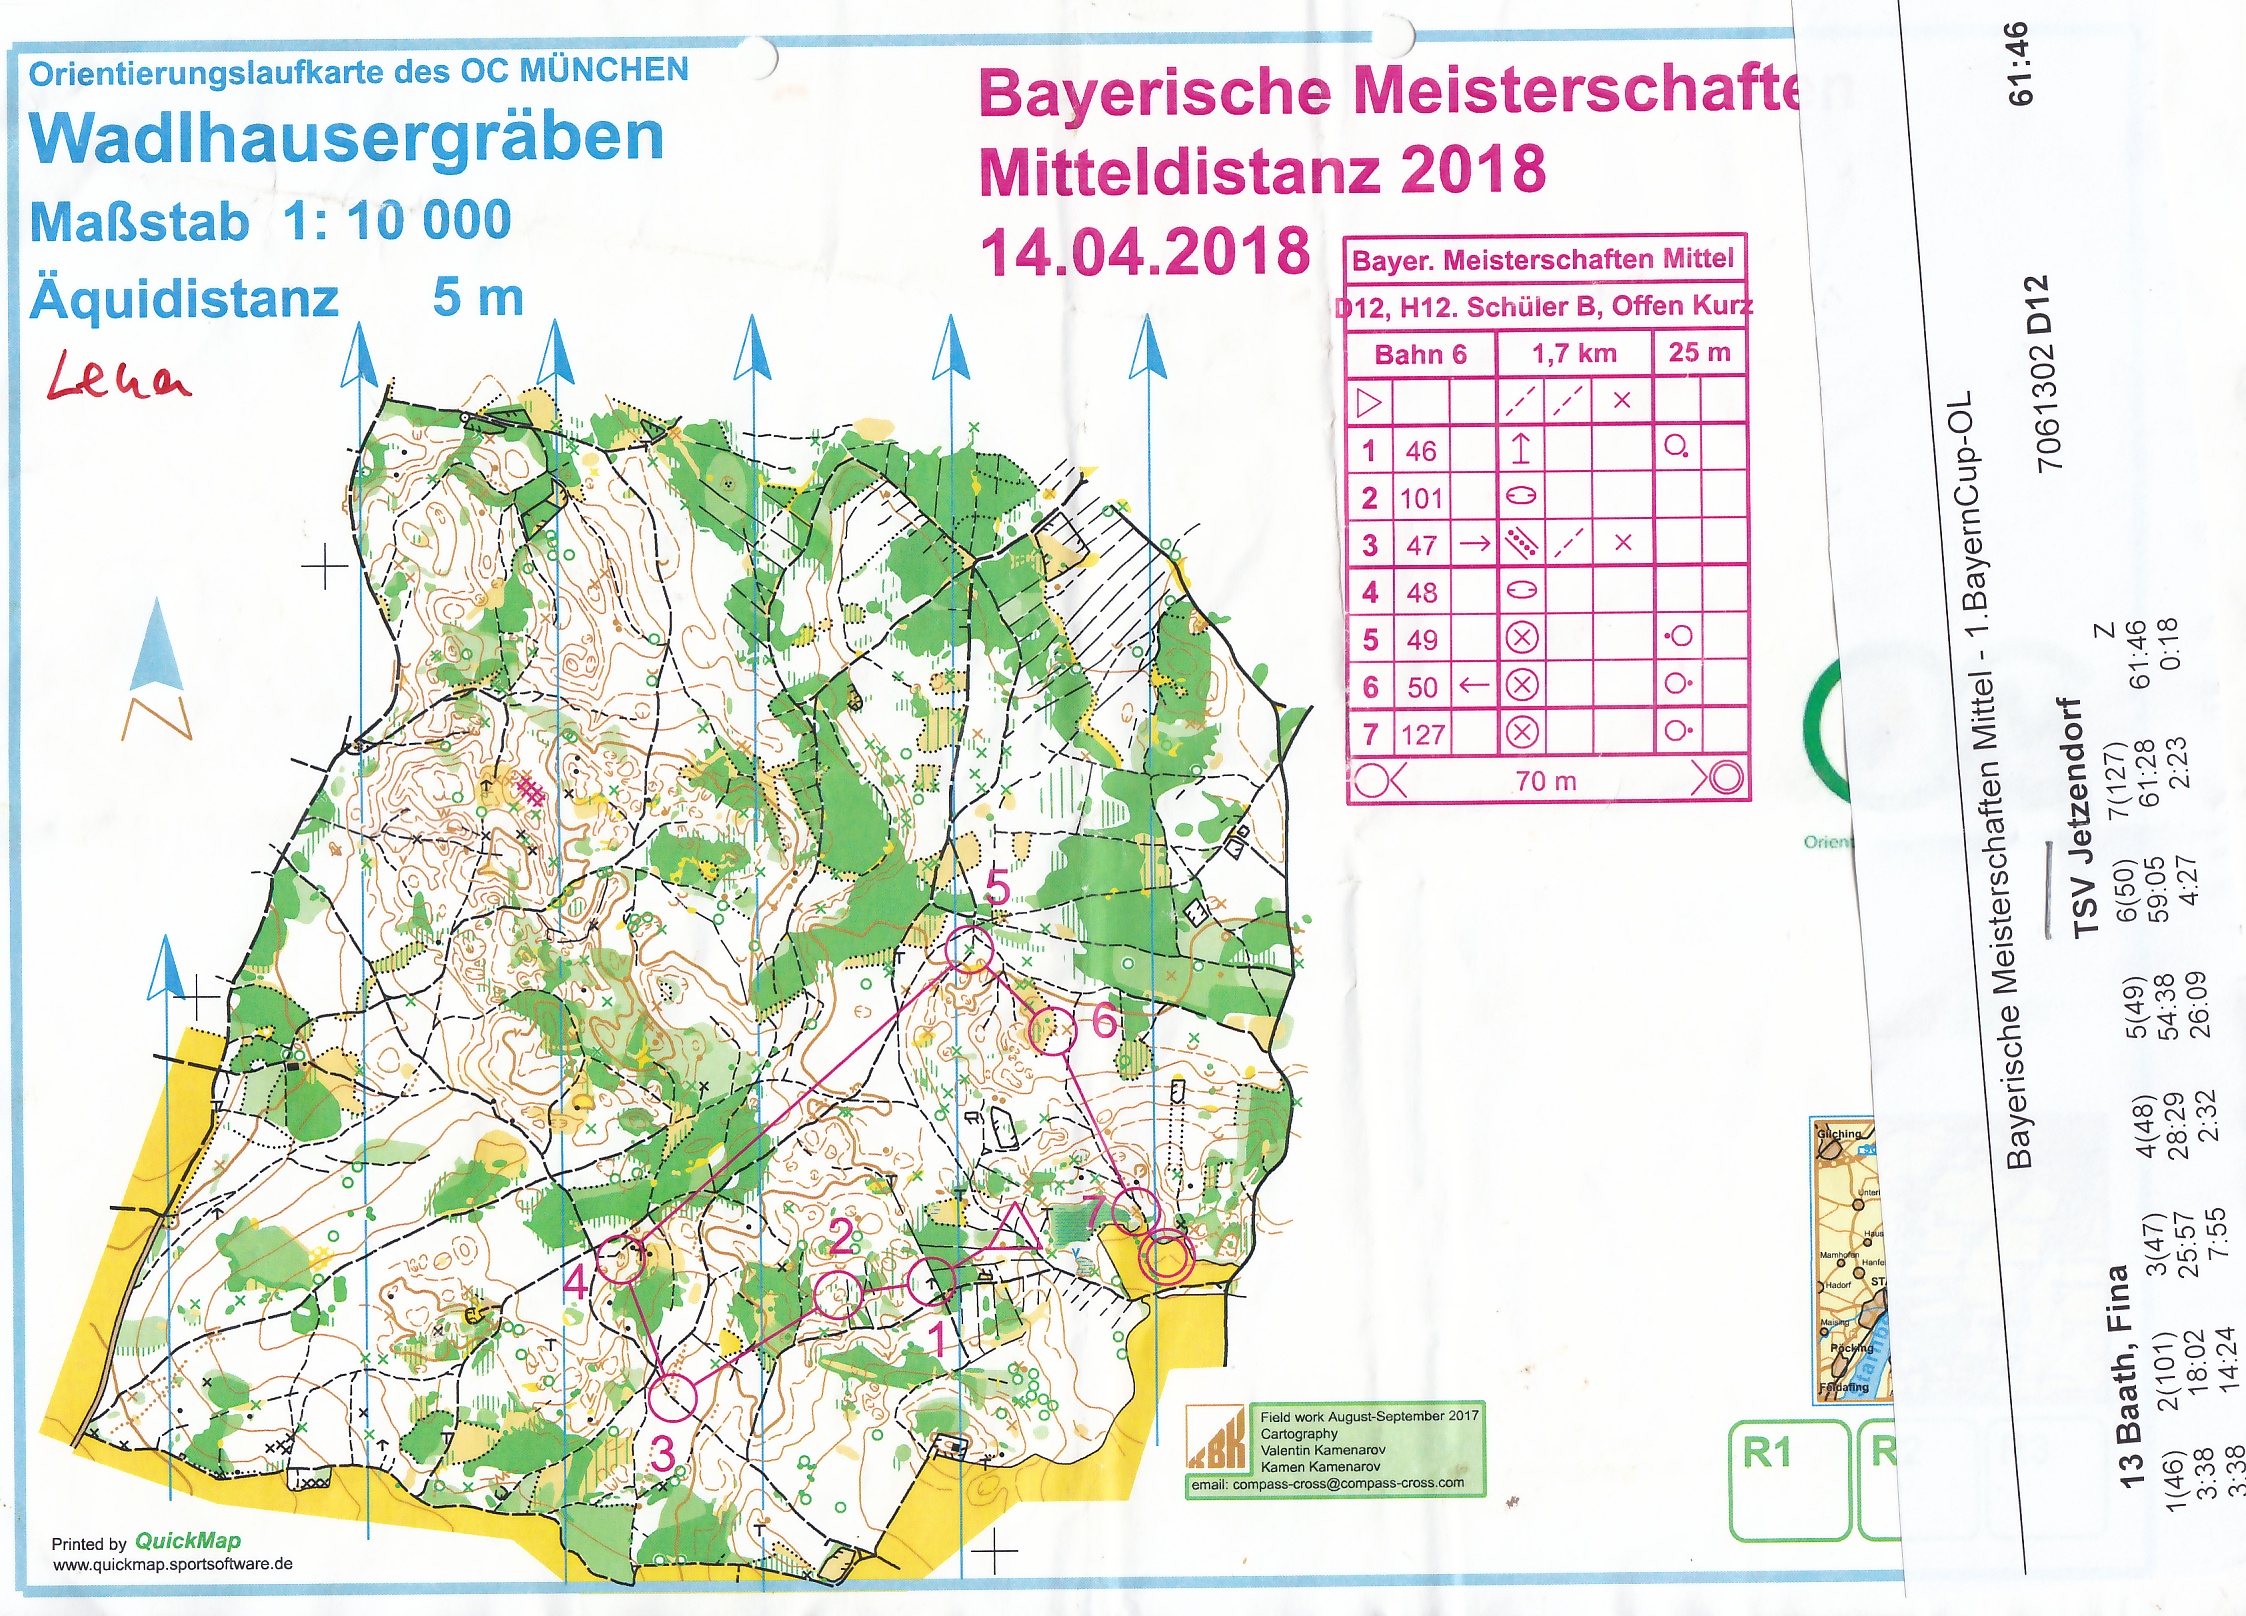 Bayerische Meisterschaften Mittel-OL 2018 Starnberg (14/04/2018)